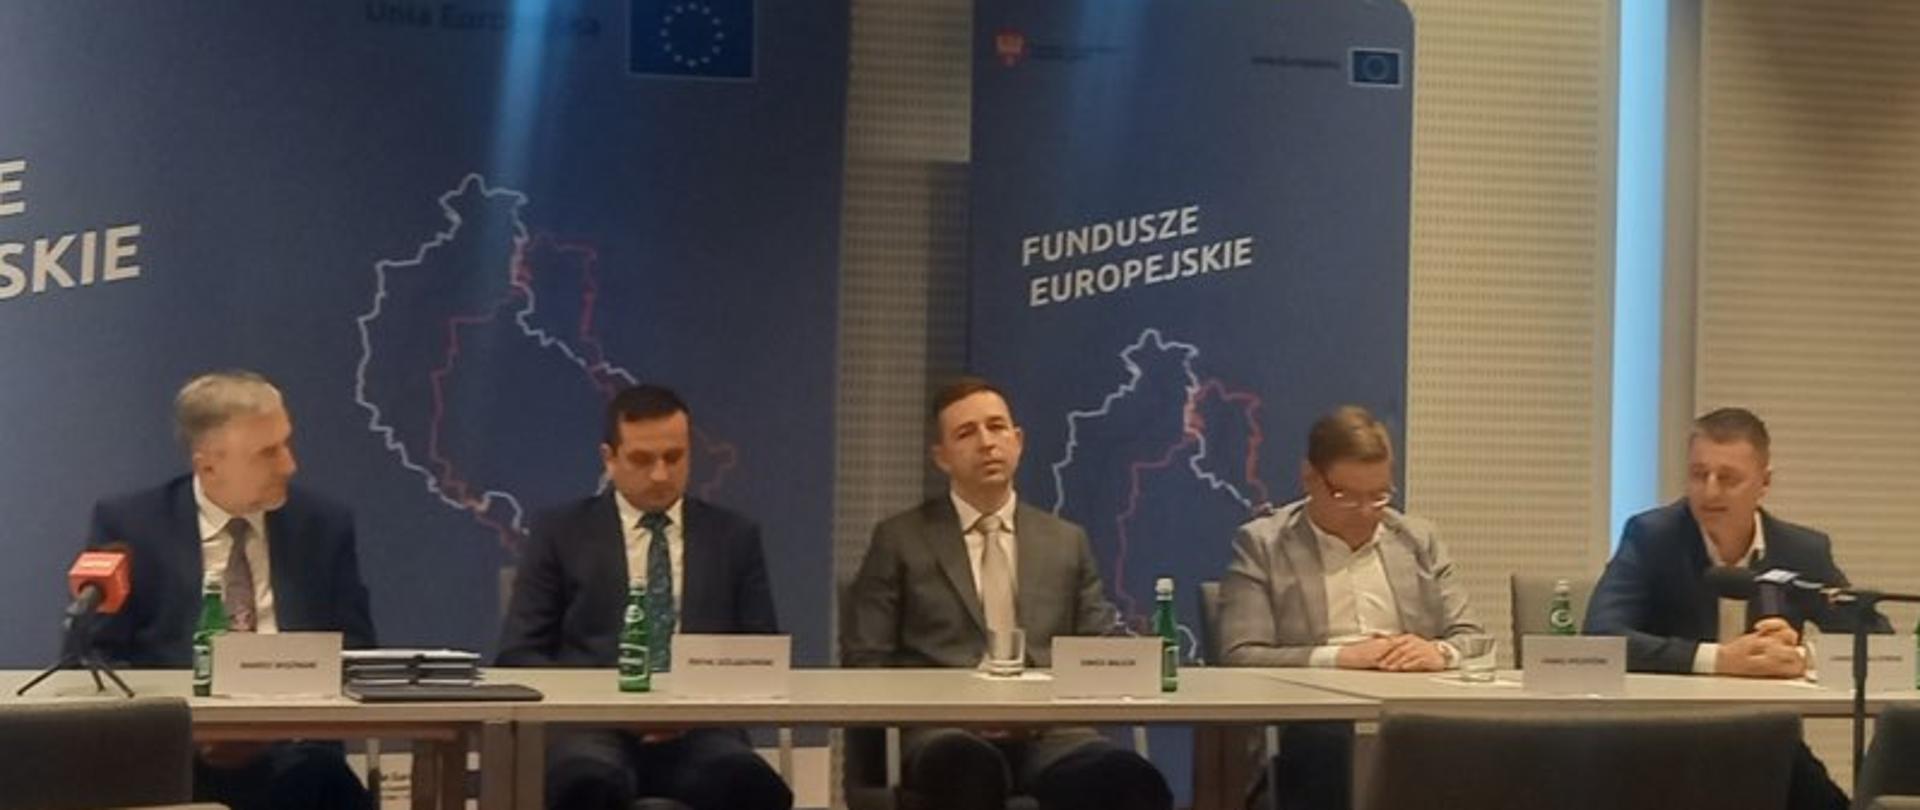 5 osób siedzących za stołem w sali konferencyjnej, w tle banery z logotypami i napisami Fundusze Europejskie